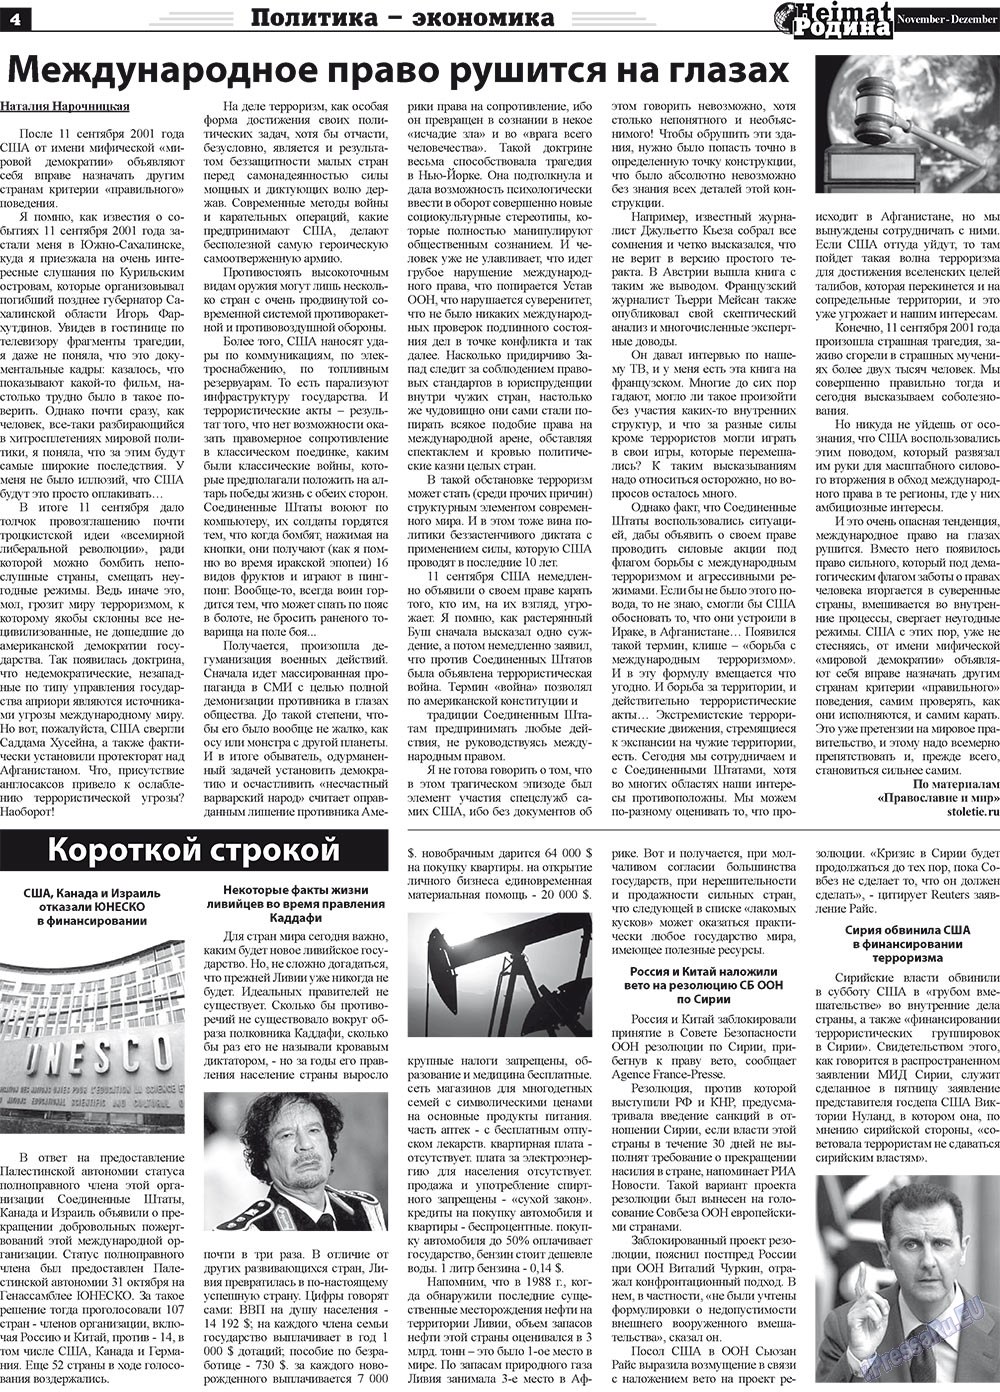 Heimat-Родина (газета). 2011 год, номер 11, стр. 4